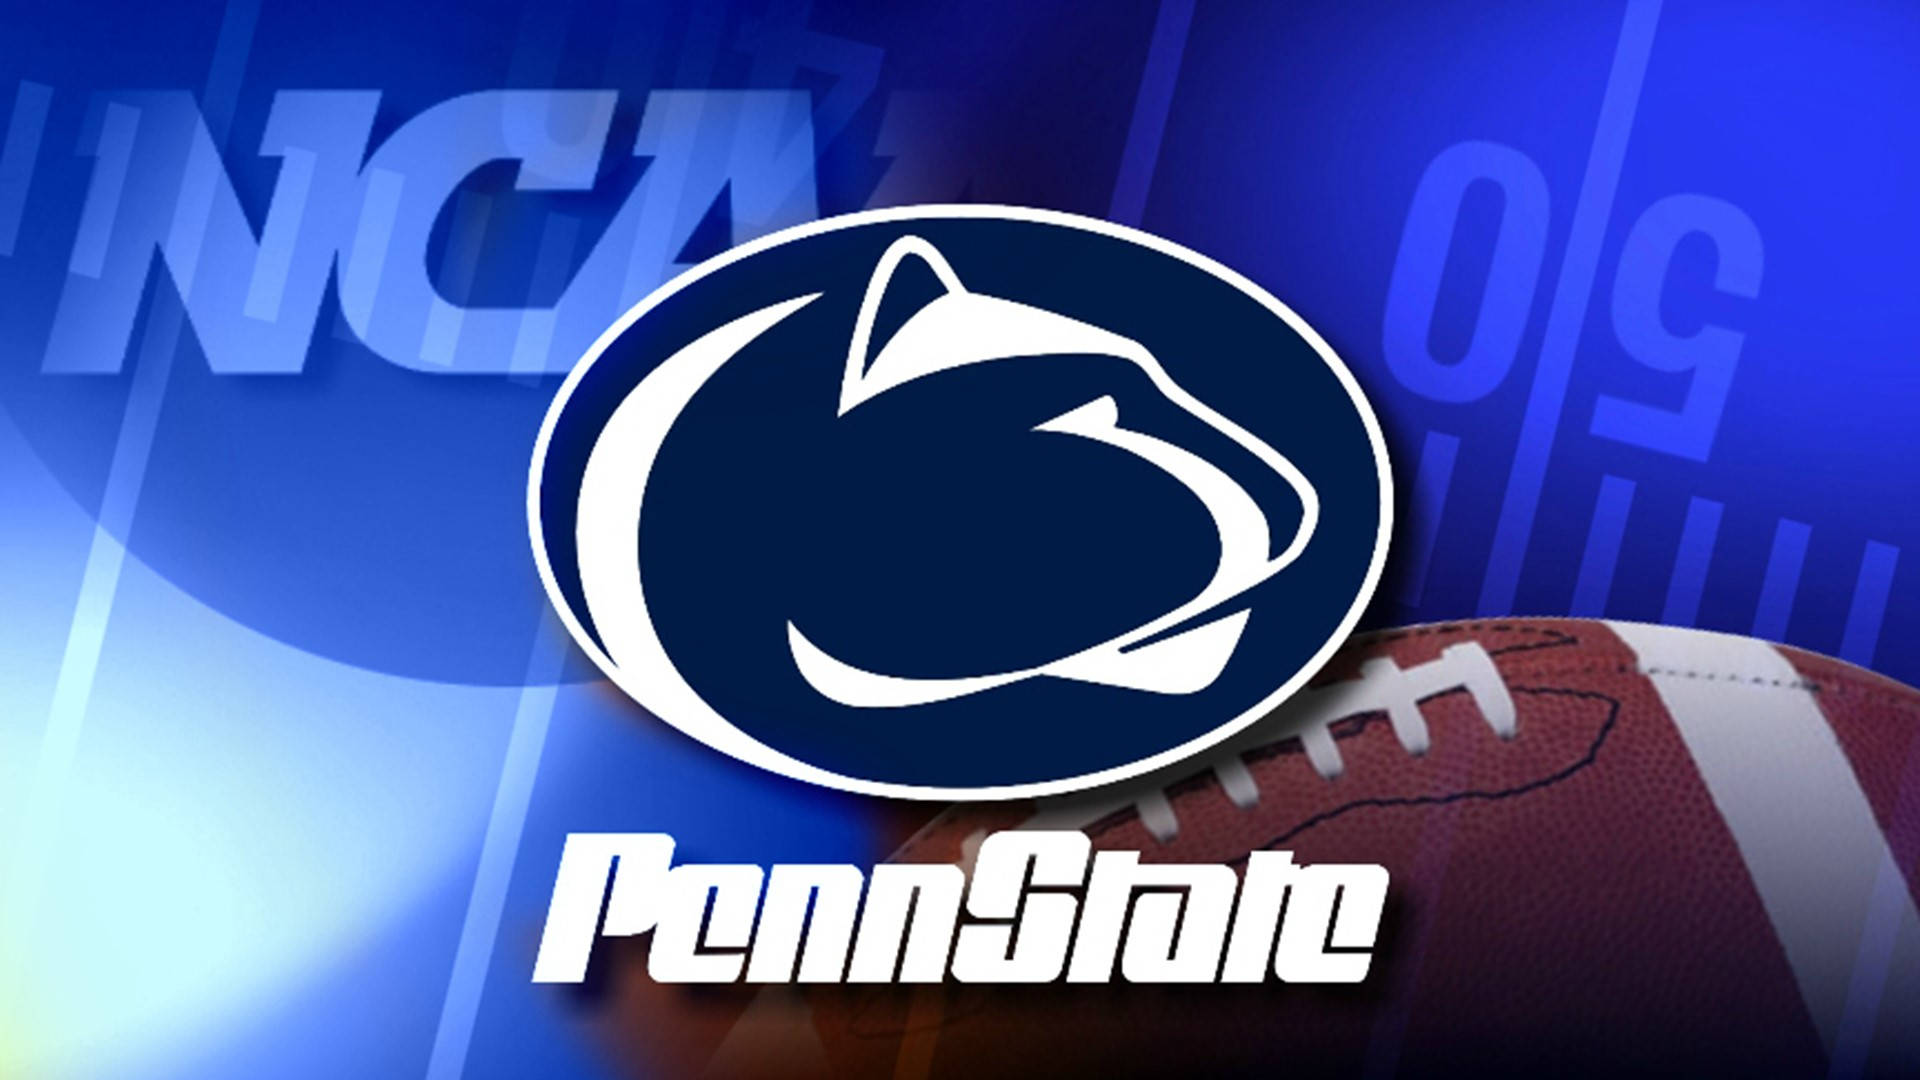 Pennstate-fußballlogo Mit Fußball- Und Penn-state-logo Wallpaper